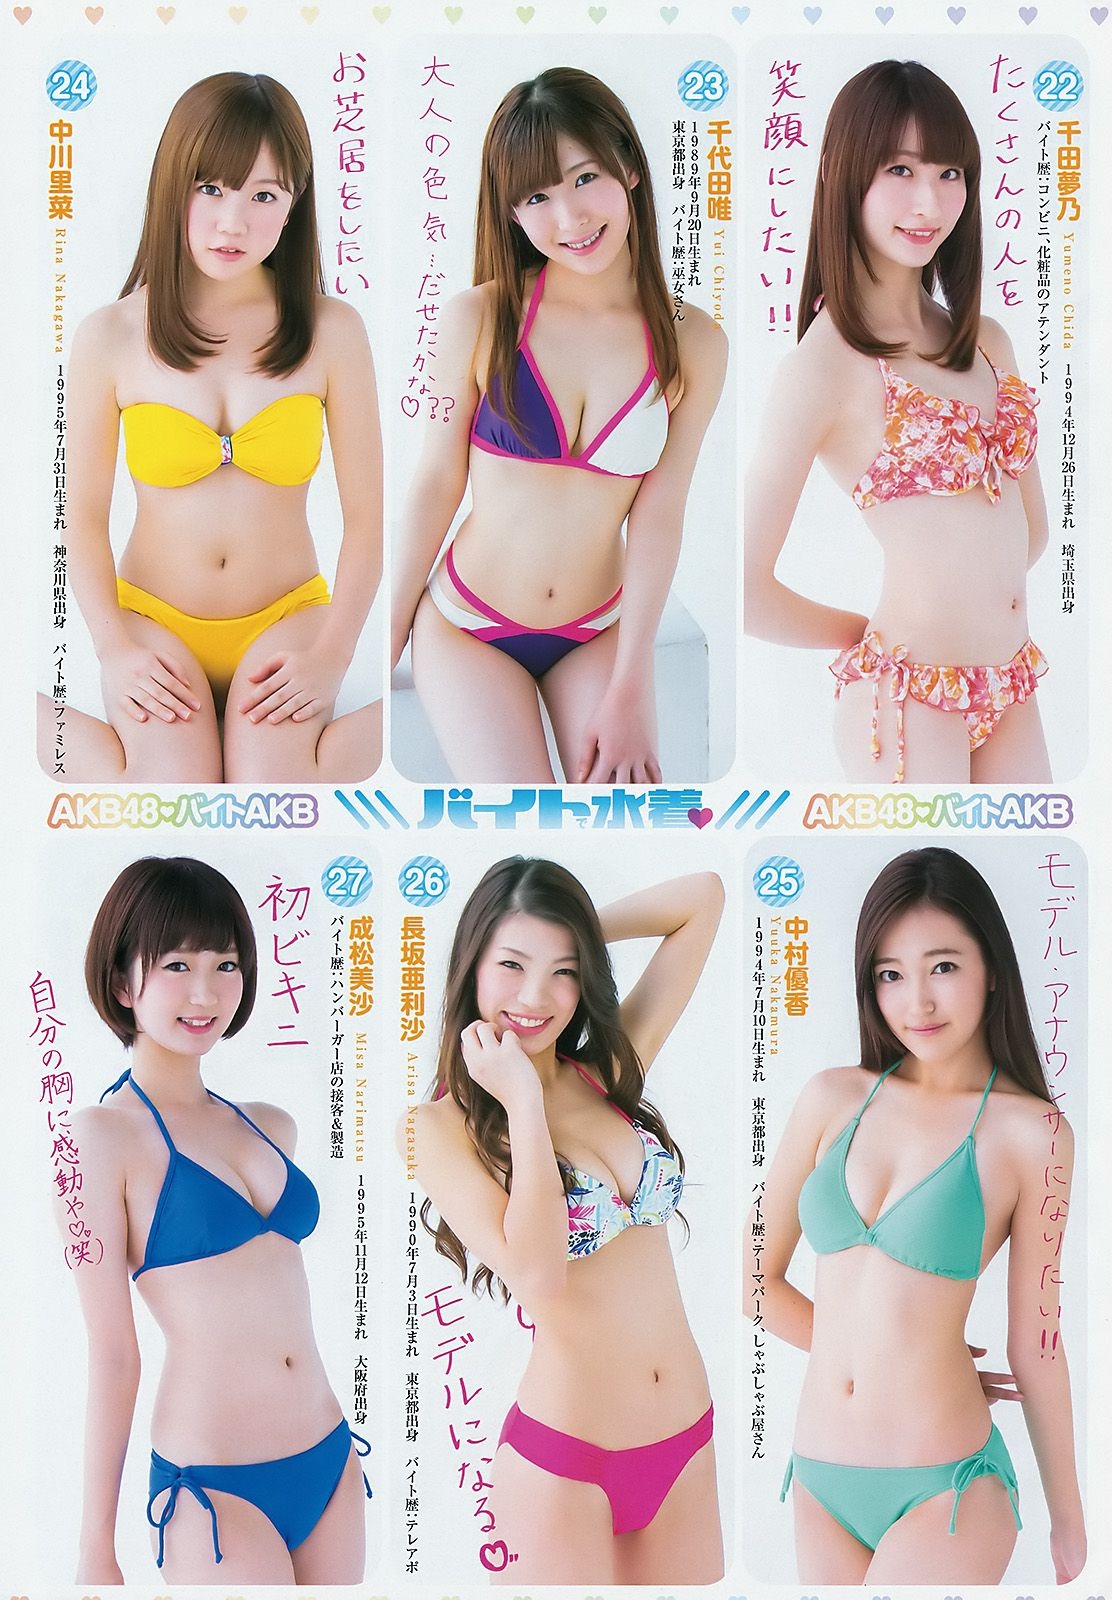 小瀨田麻由 飯豊まりえ バイトAKB [Weekly Young Jump] 2015年No.03 写真杂志 